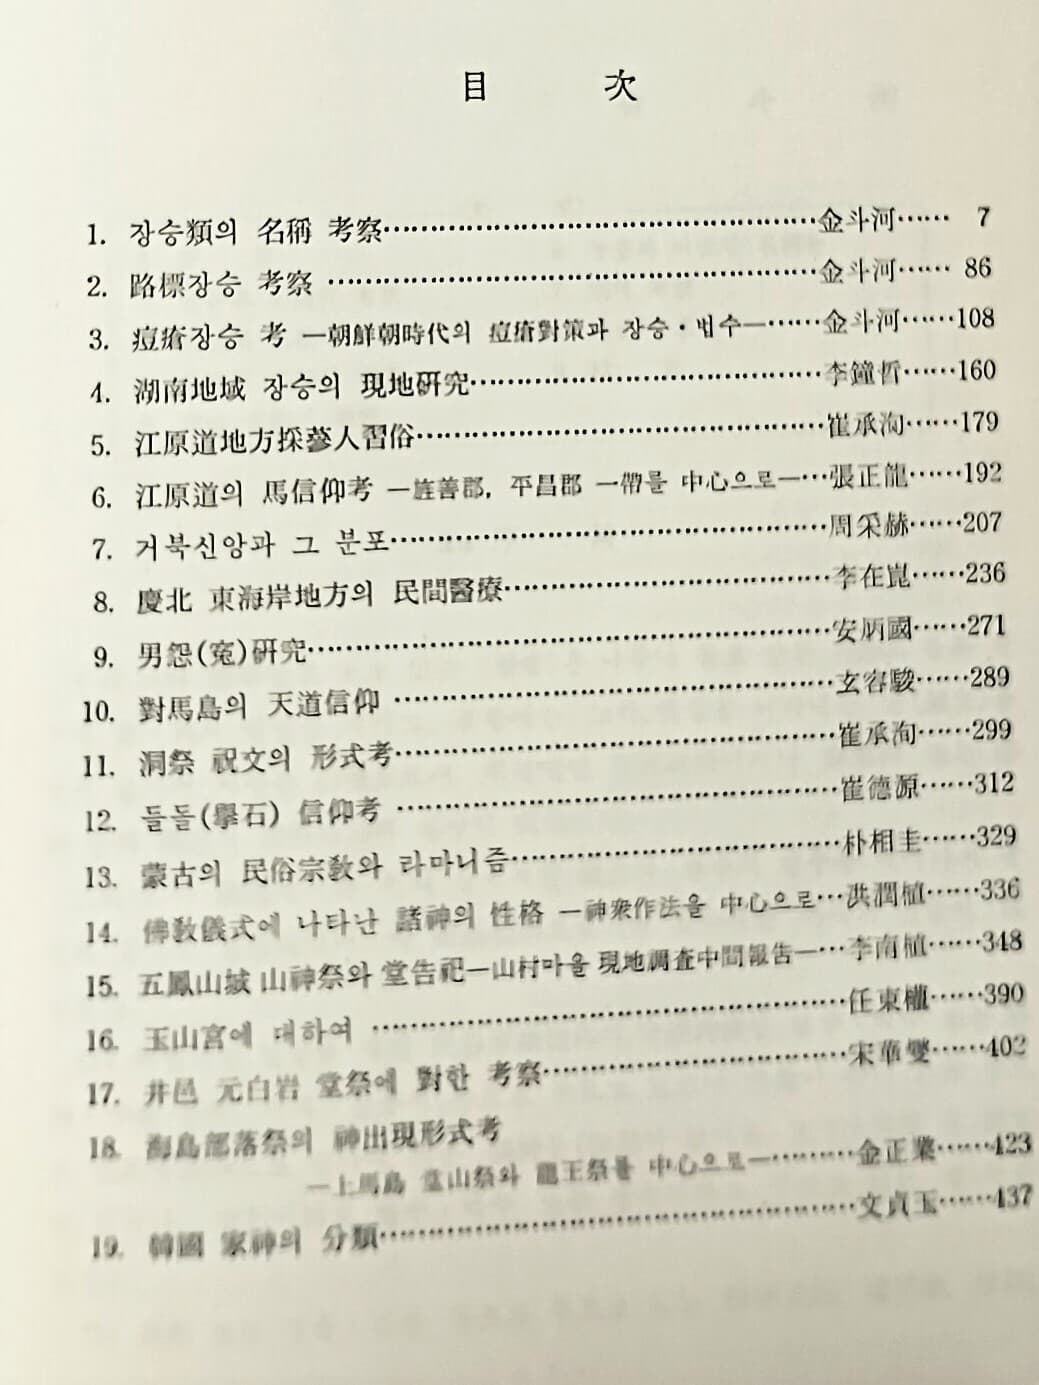 민간신앙 -한국민속학총서 4- 교문사- 469쪽,하드커버-